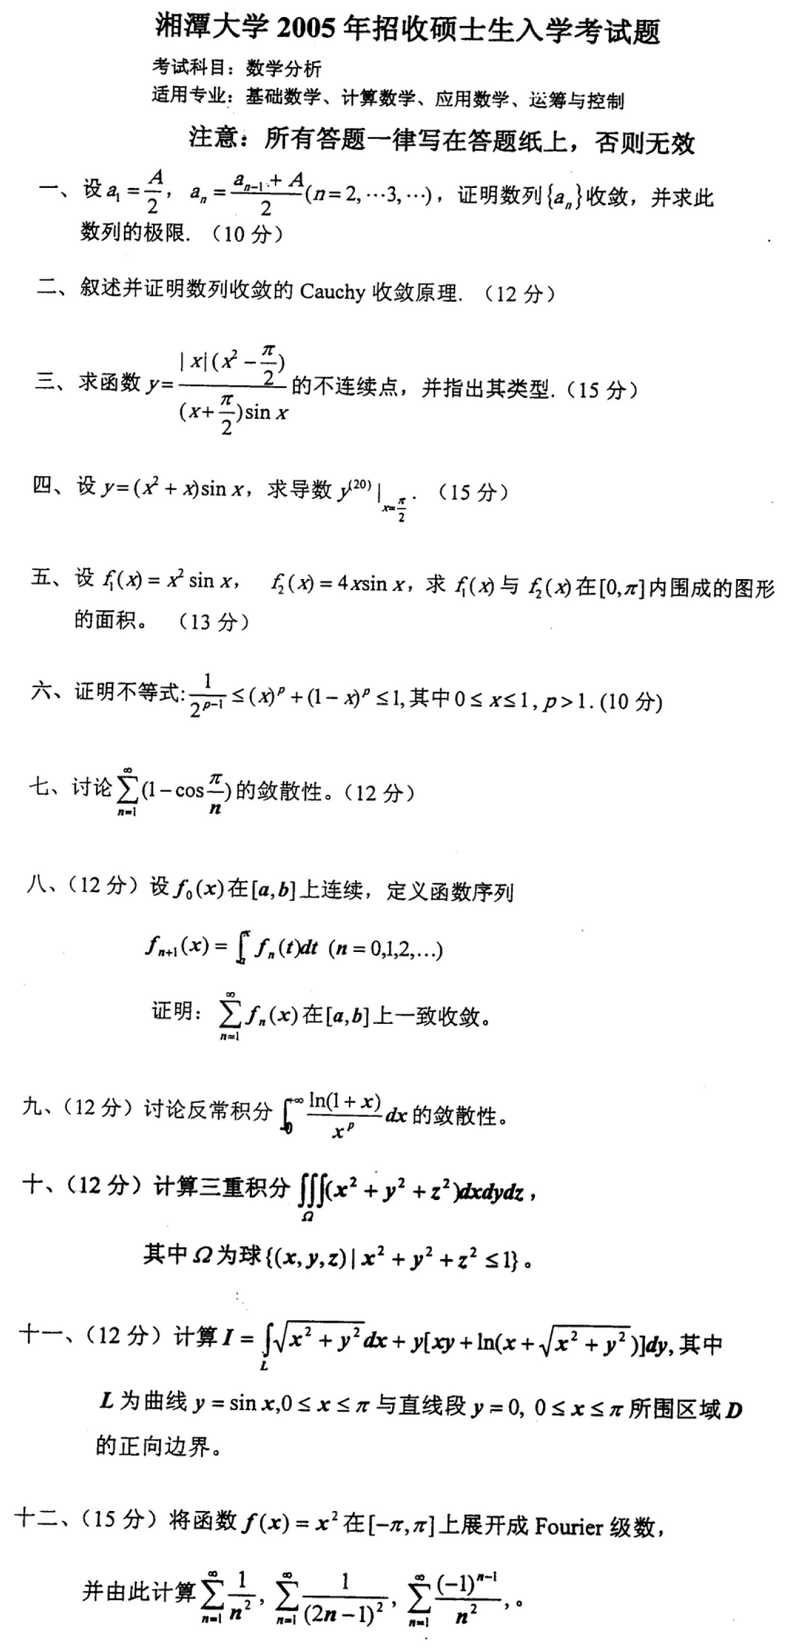 2005湘潭大学考研数学真题（数学分析）.png